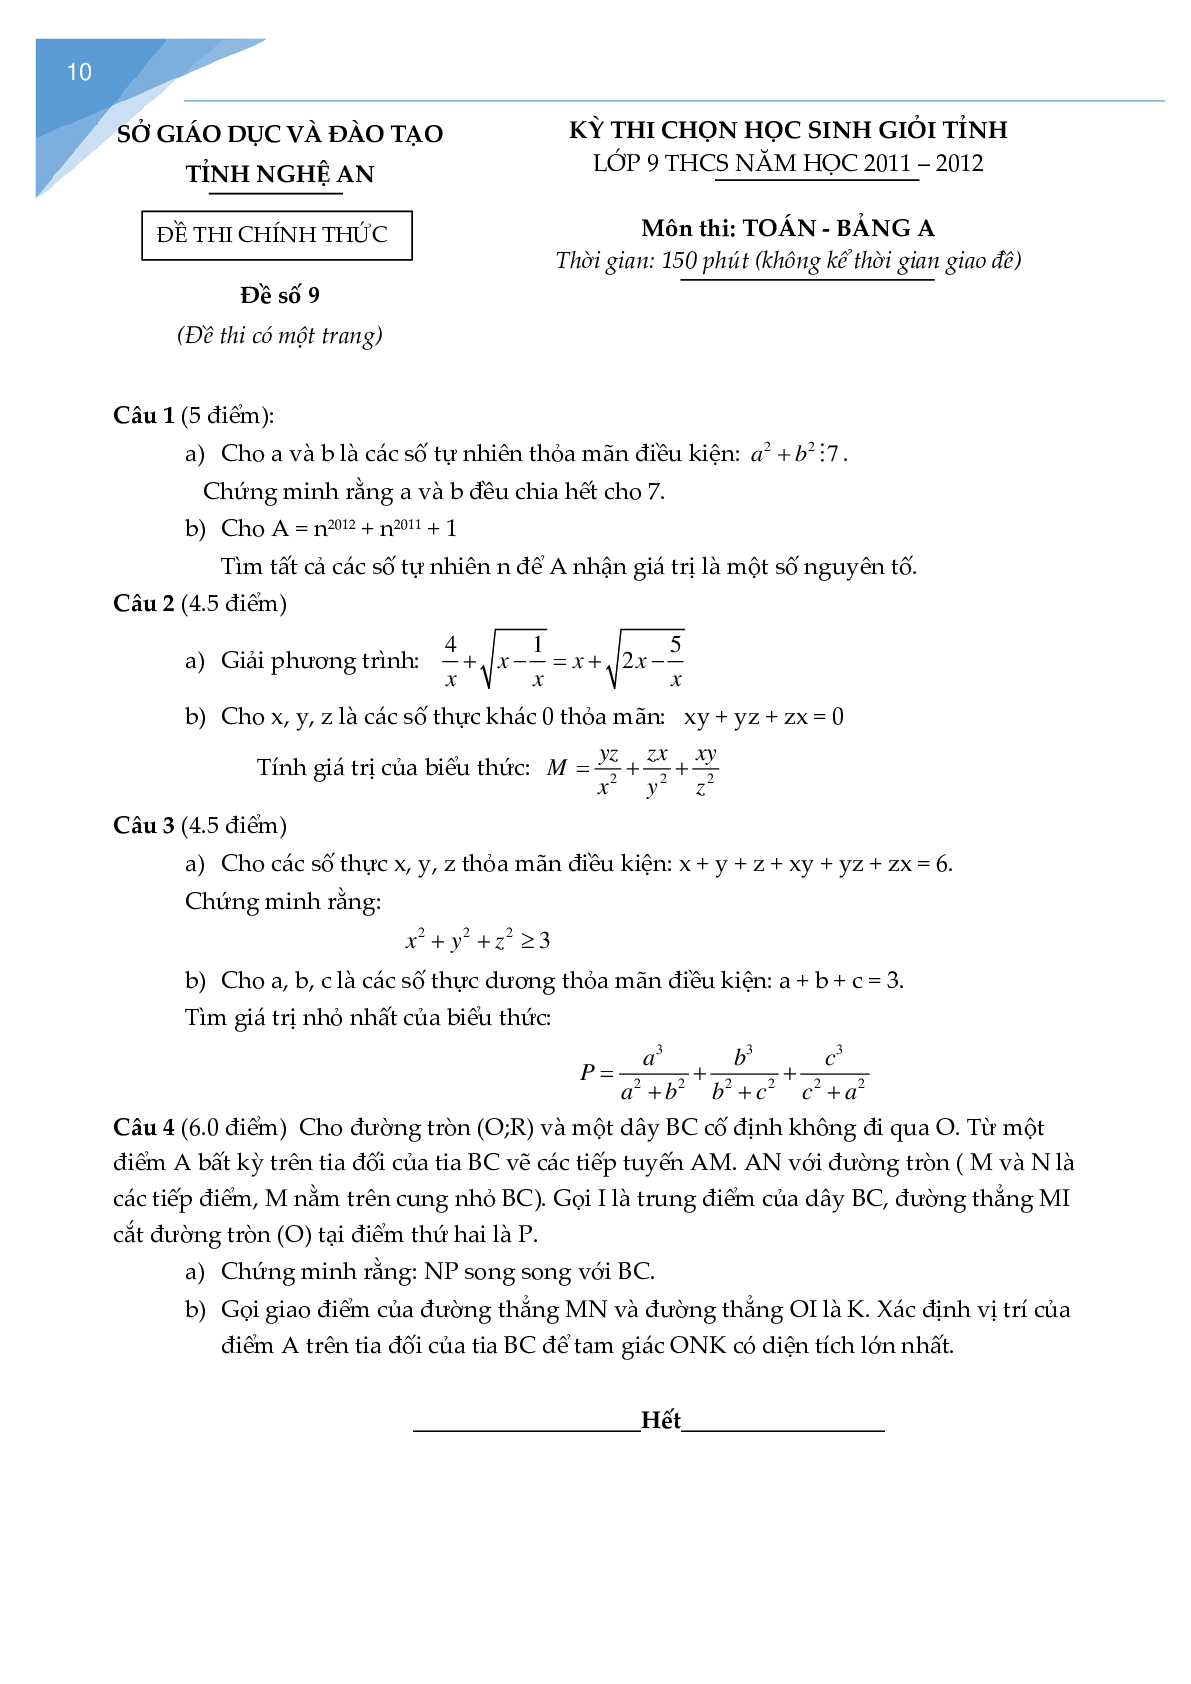 Bộ đề thi học sinh giỏi toán lớp 9 tỉnh Nghệ An (trang 9)